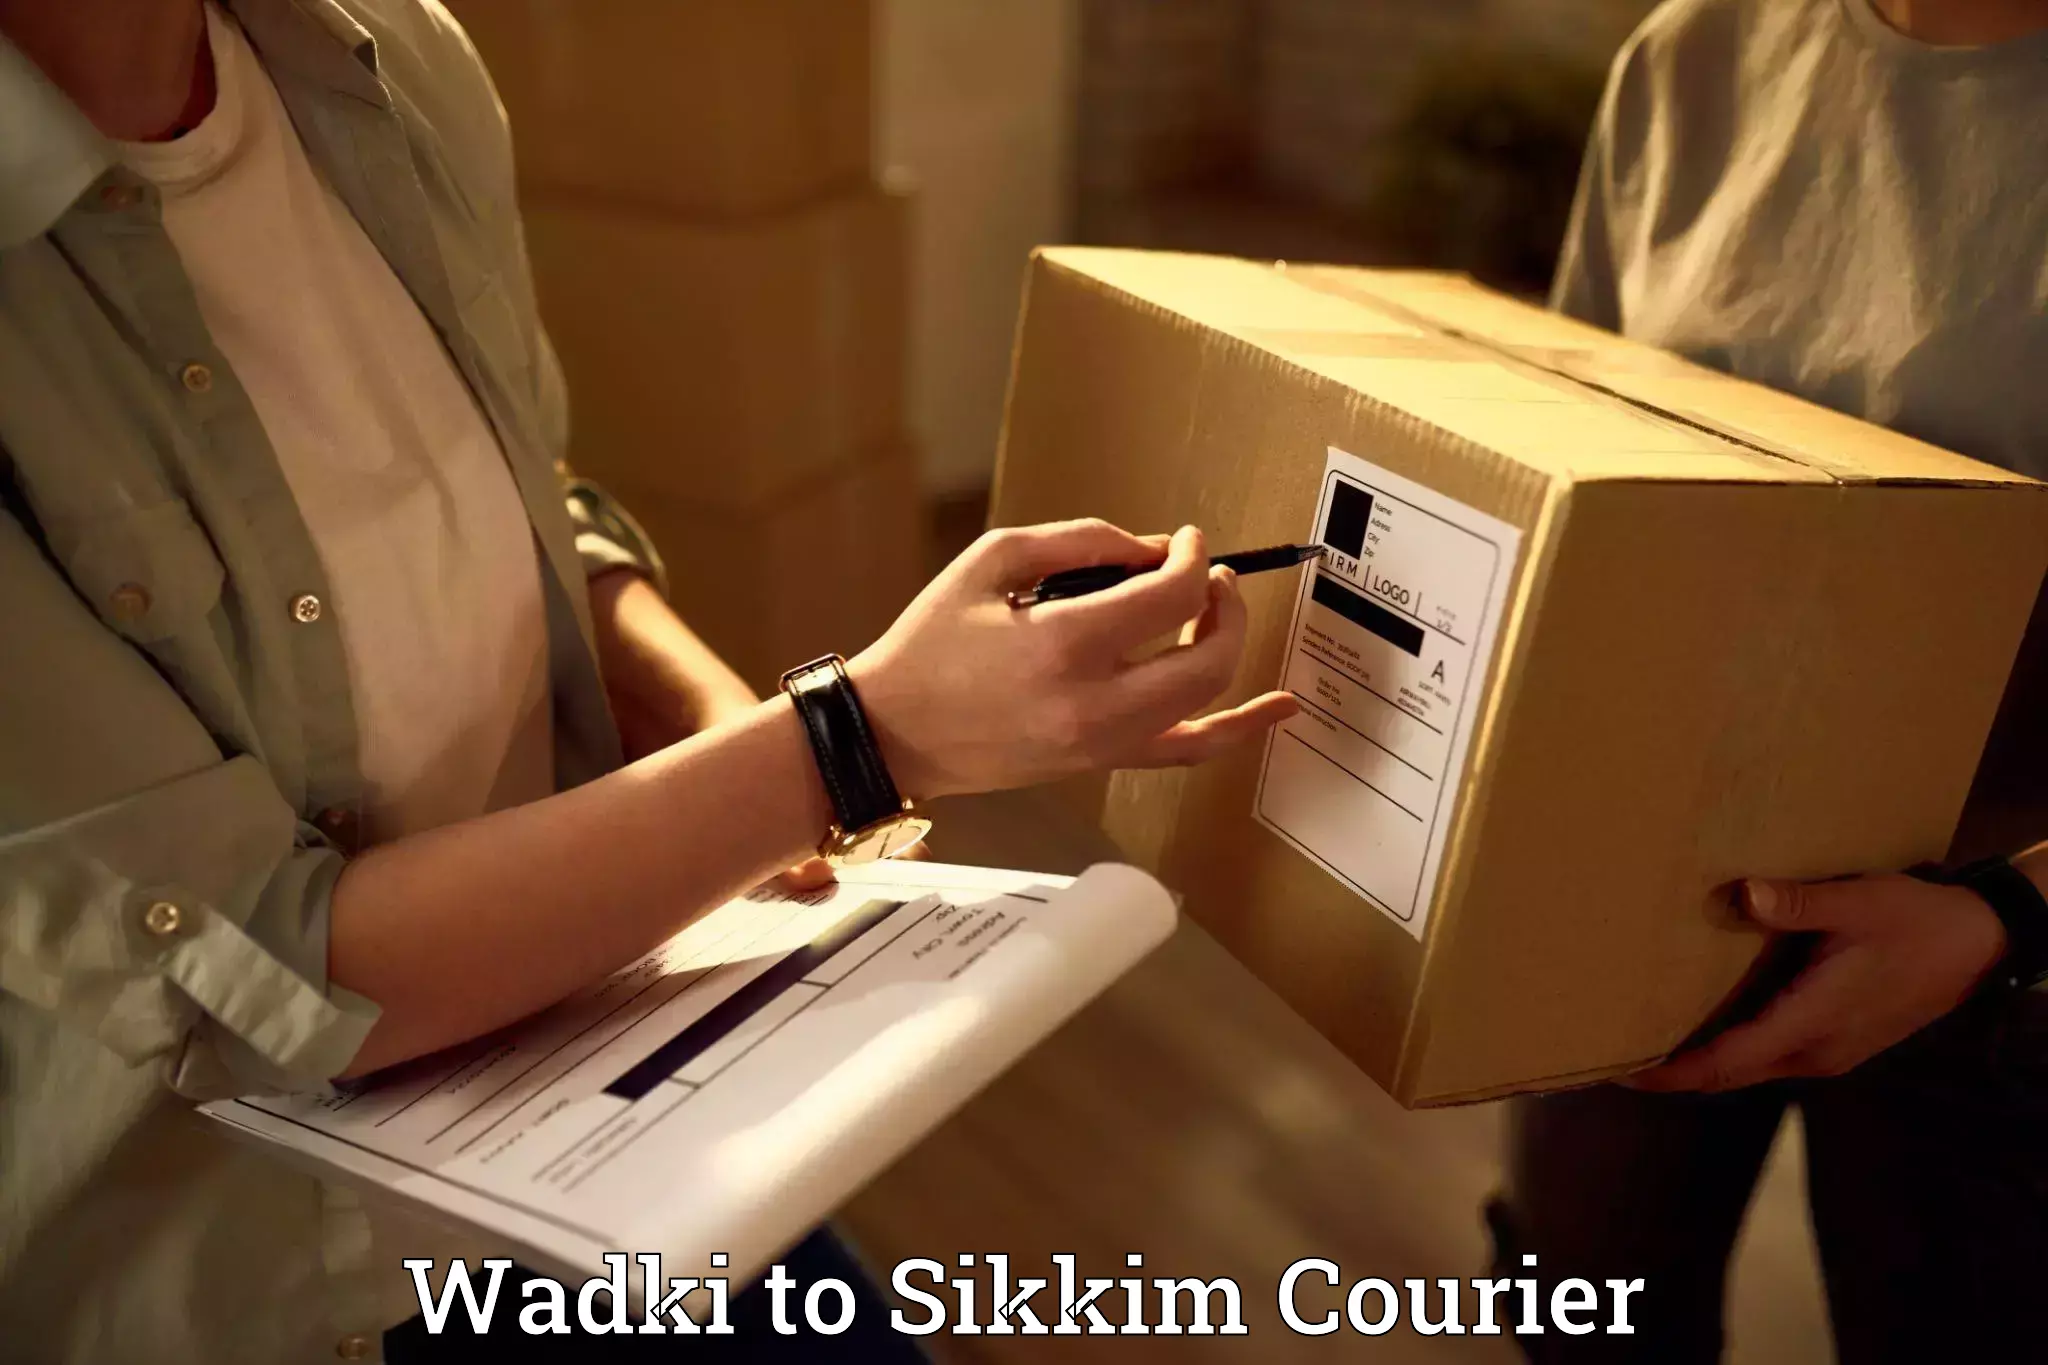 Specialized moving company Wadki to Sikkim